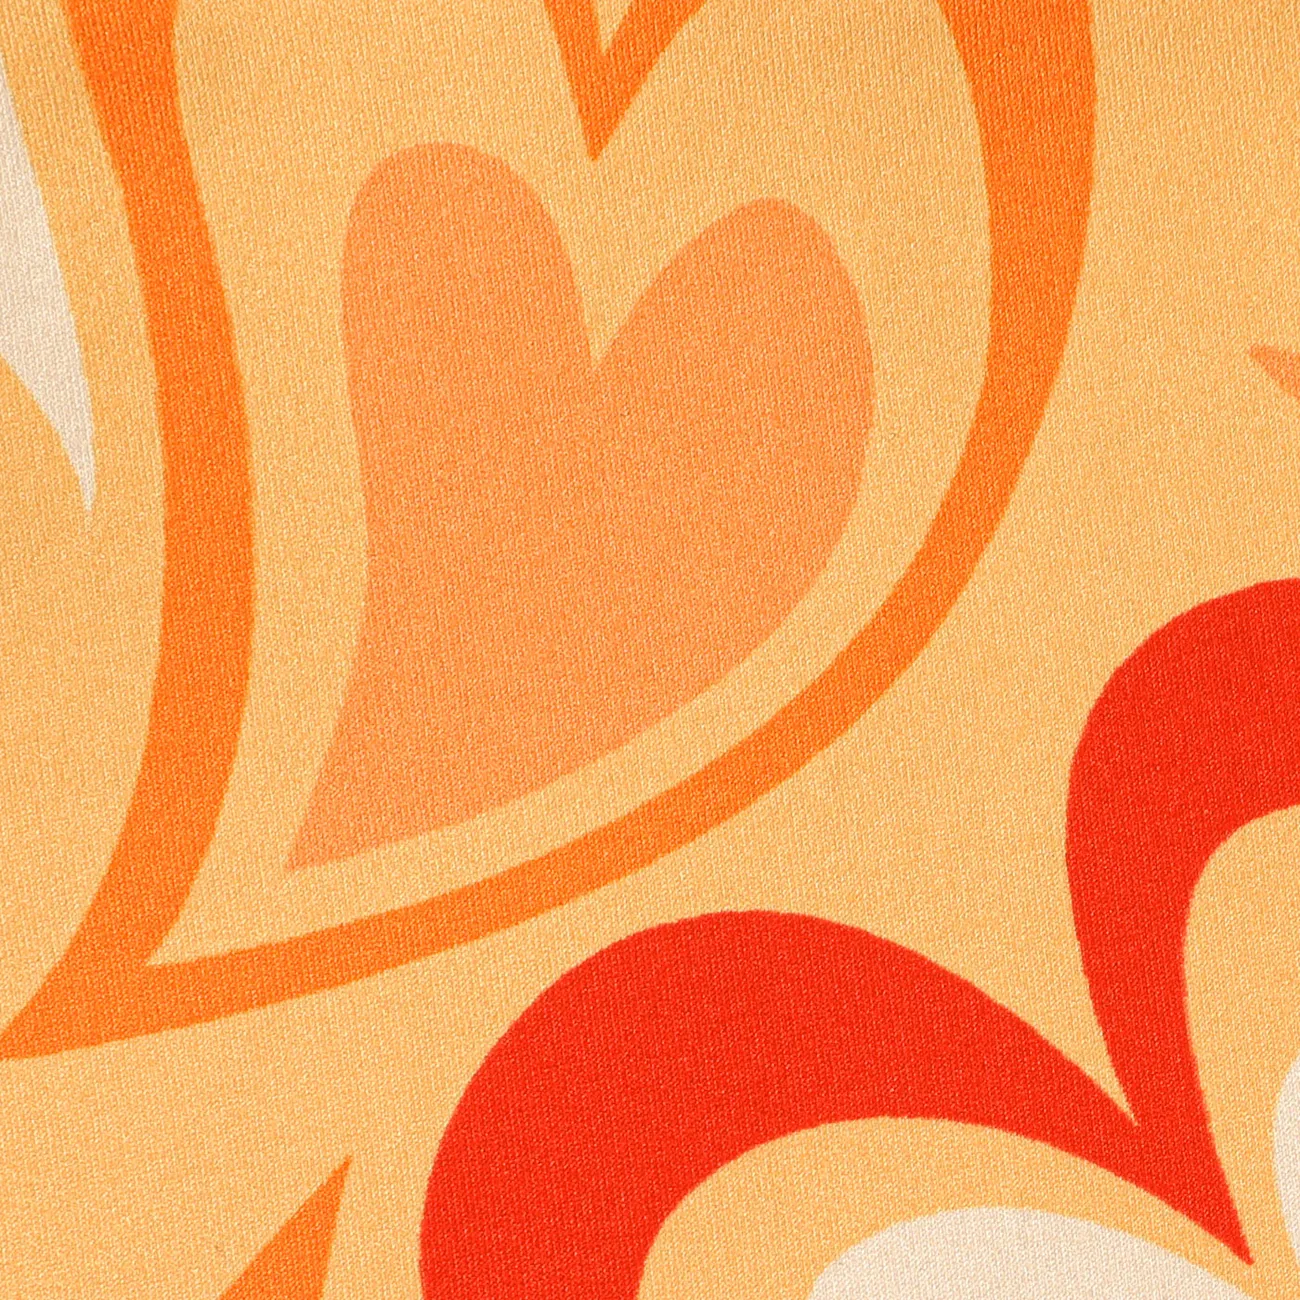 Bambini Ragazza A forma di cuore Senza maniche Maglietta Arancione big image 1